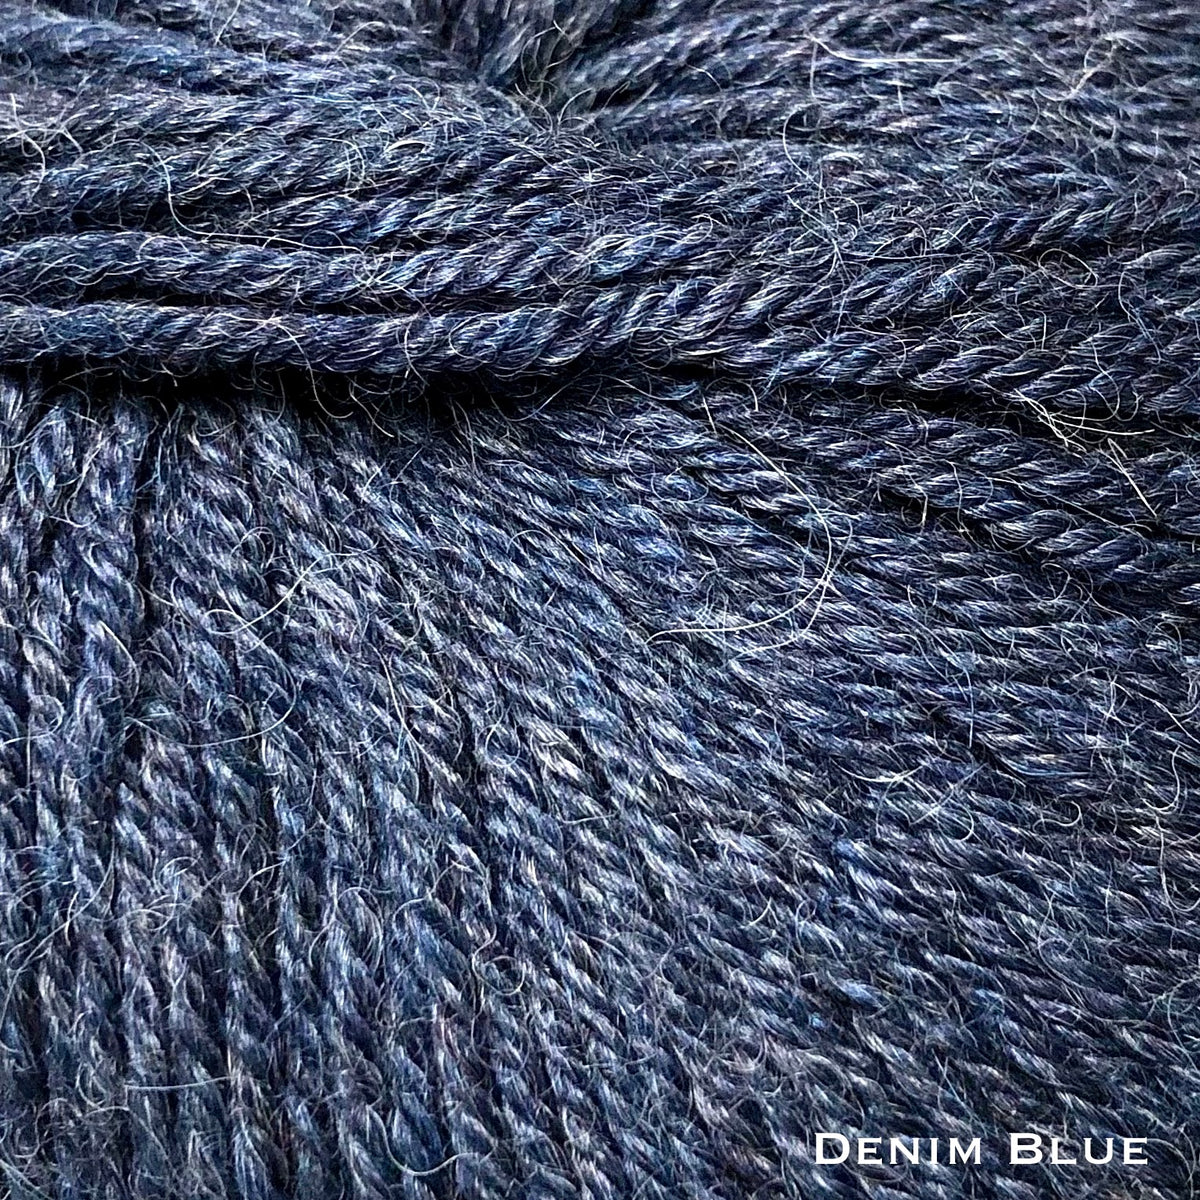 denim blue yarn for knitting